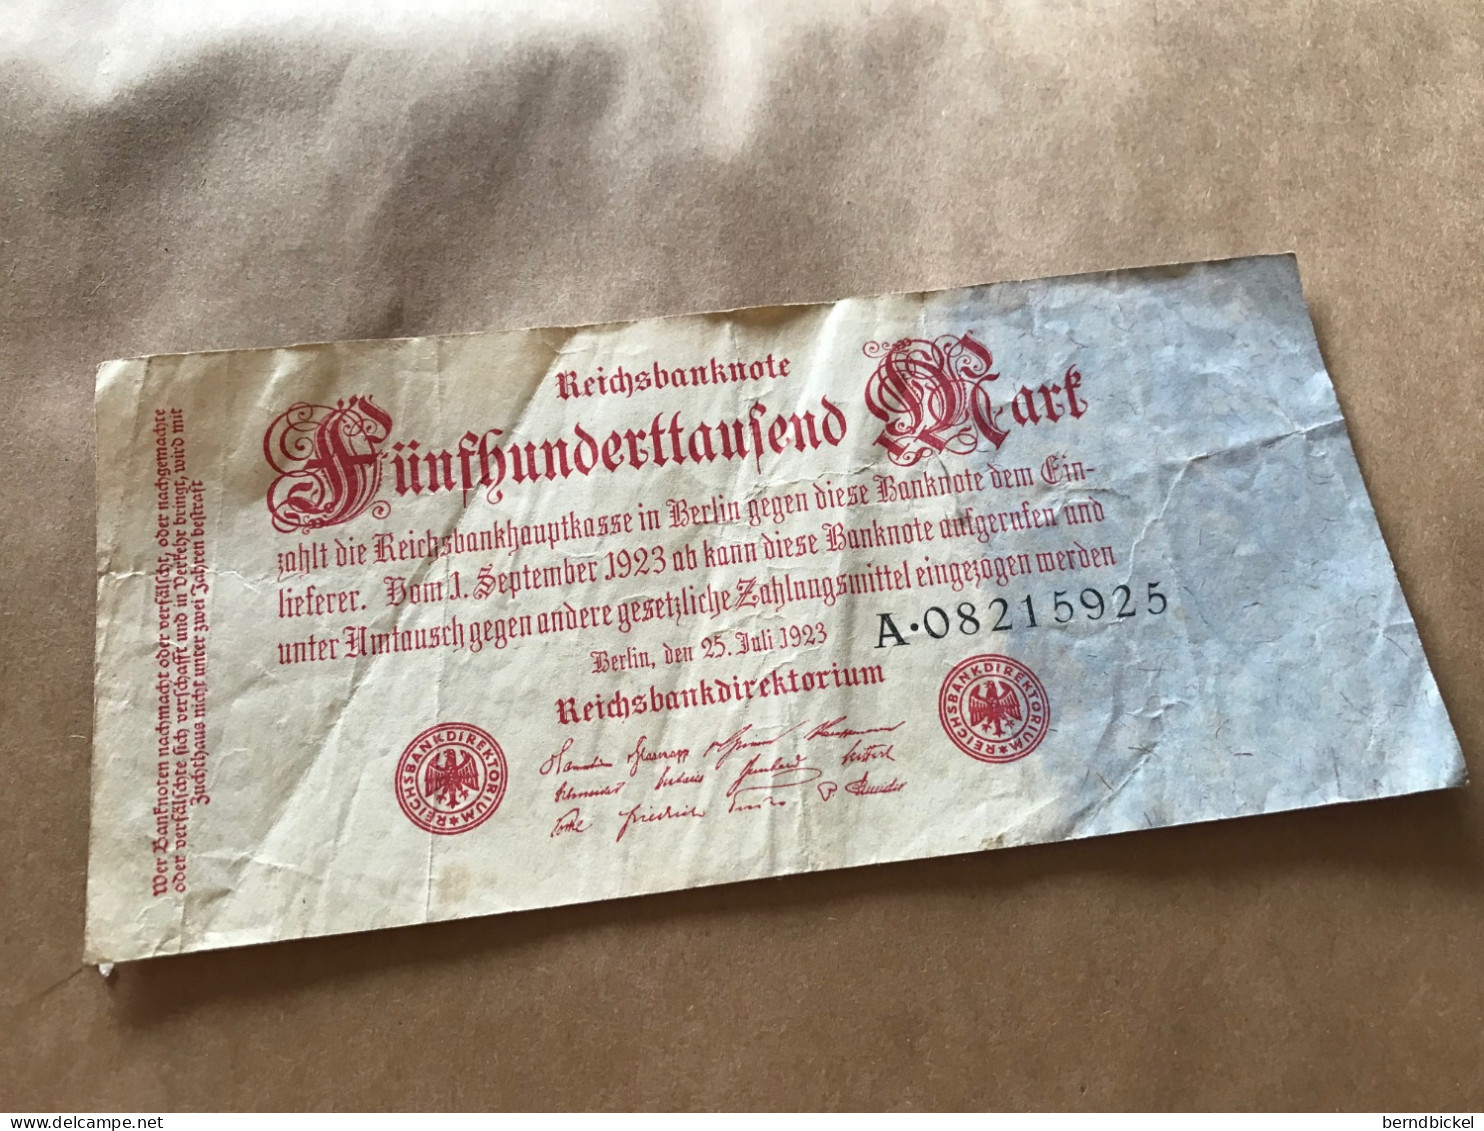 Banknote Geldschein Reichsbanknote Deutsches Reich 500.000 Mark 1923 - 500.000 Mark